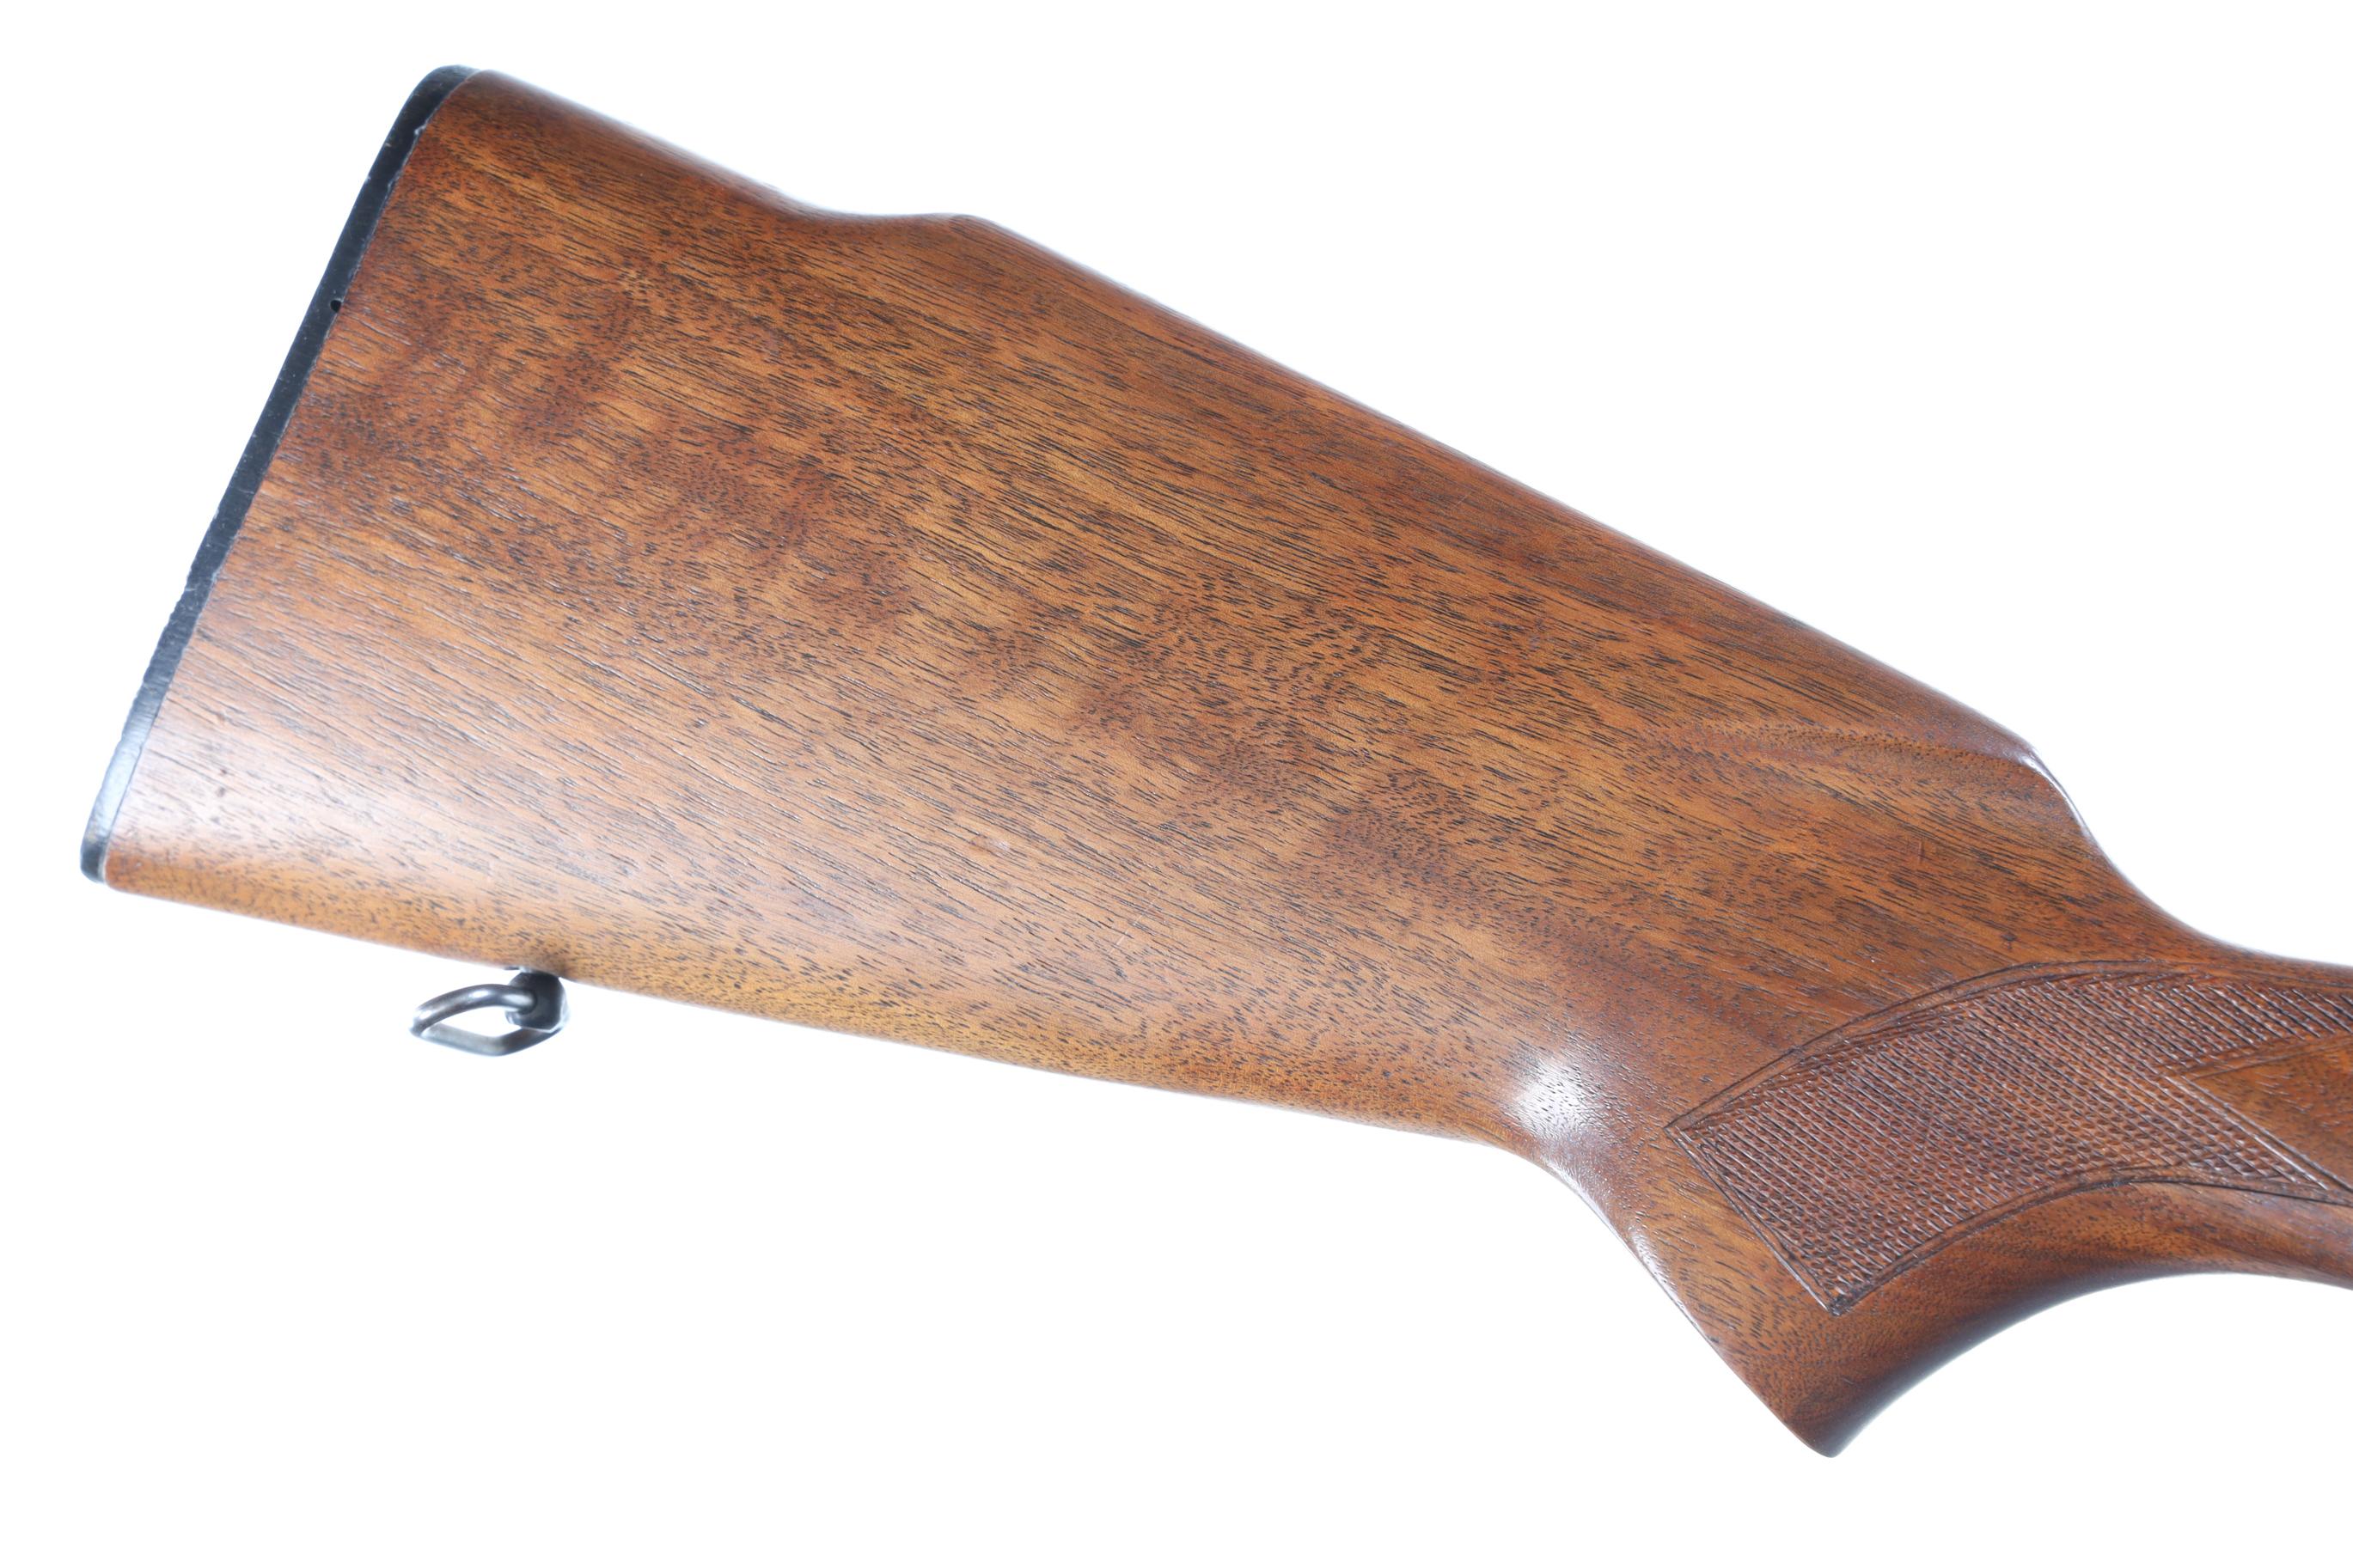 Winchester 70 Pre-64 Bolt Rifle .243 win